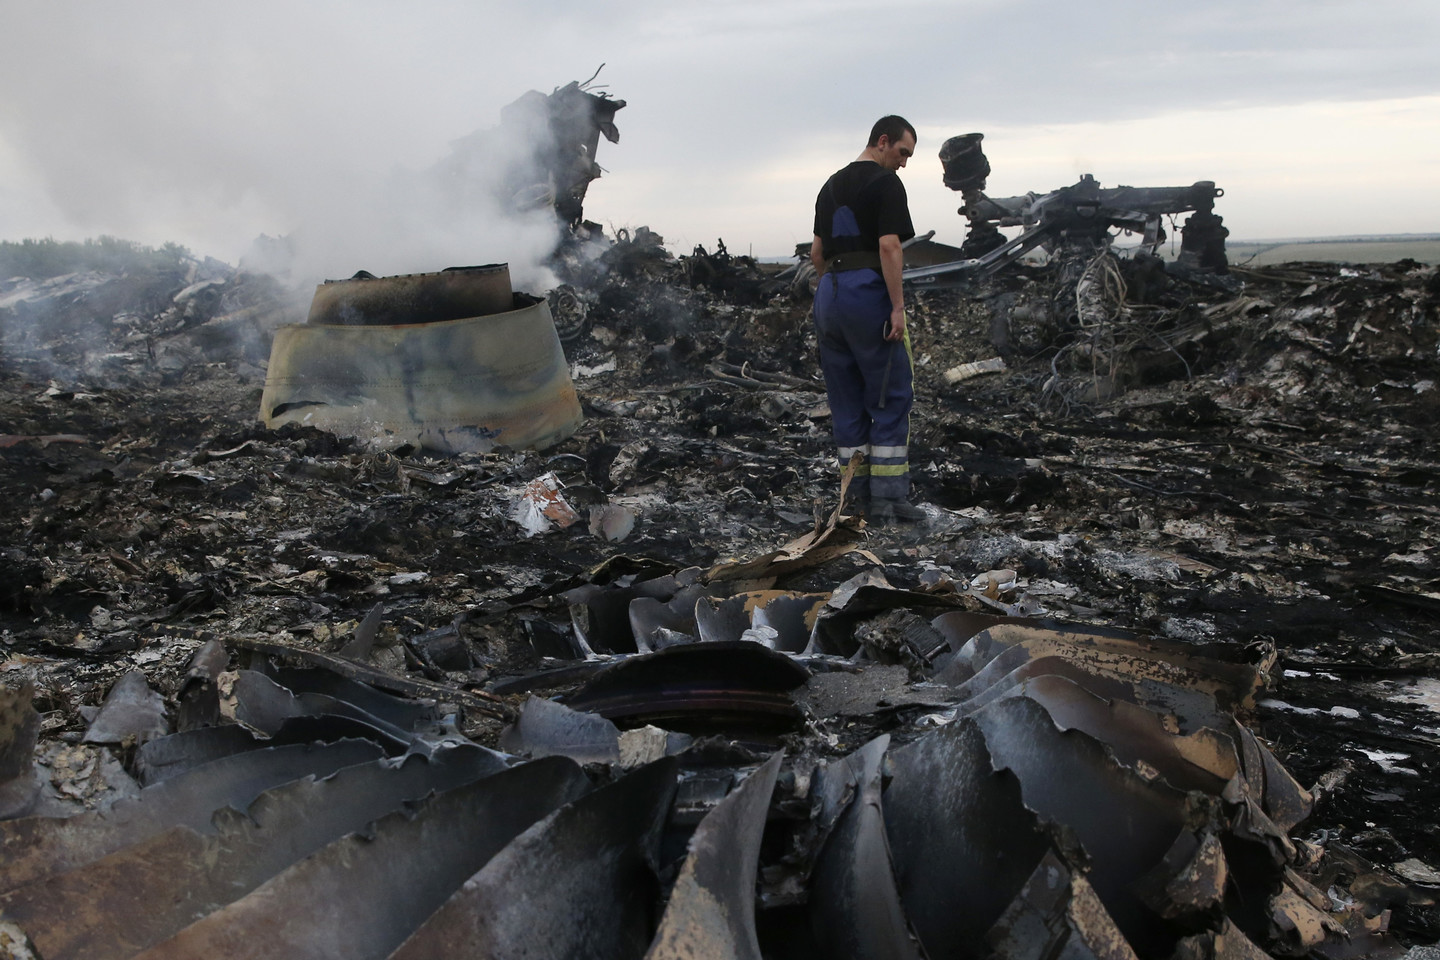  Lėktuvas buvo numuštas virs Ukrainos separatistų valdomų teritorijų. <br> Reuters/Scanpix nuotr.